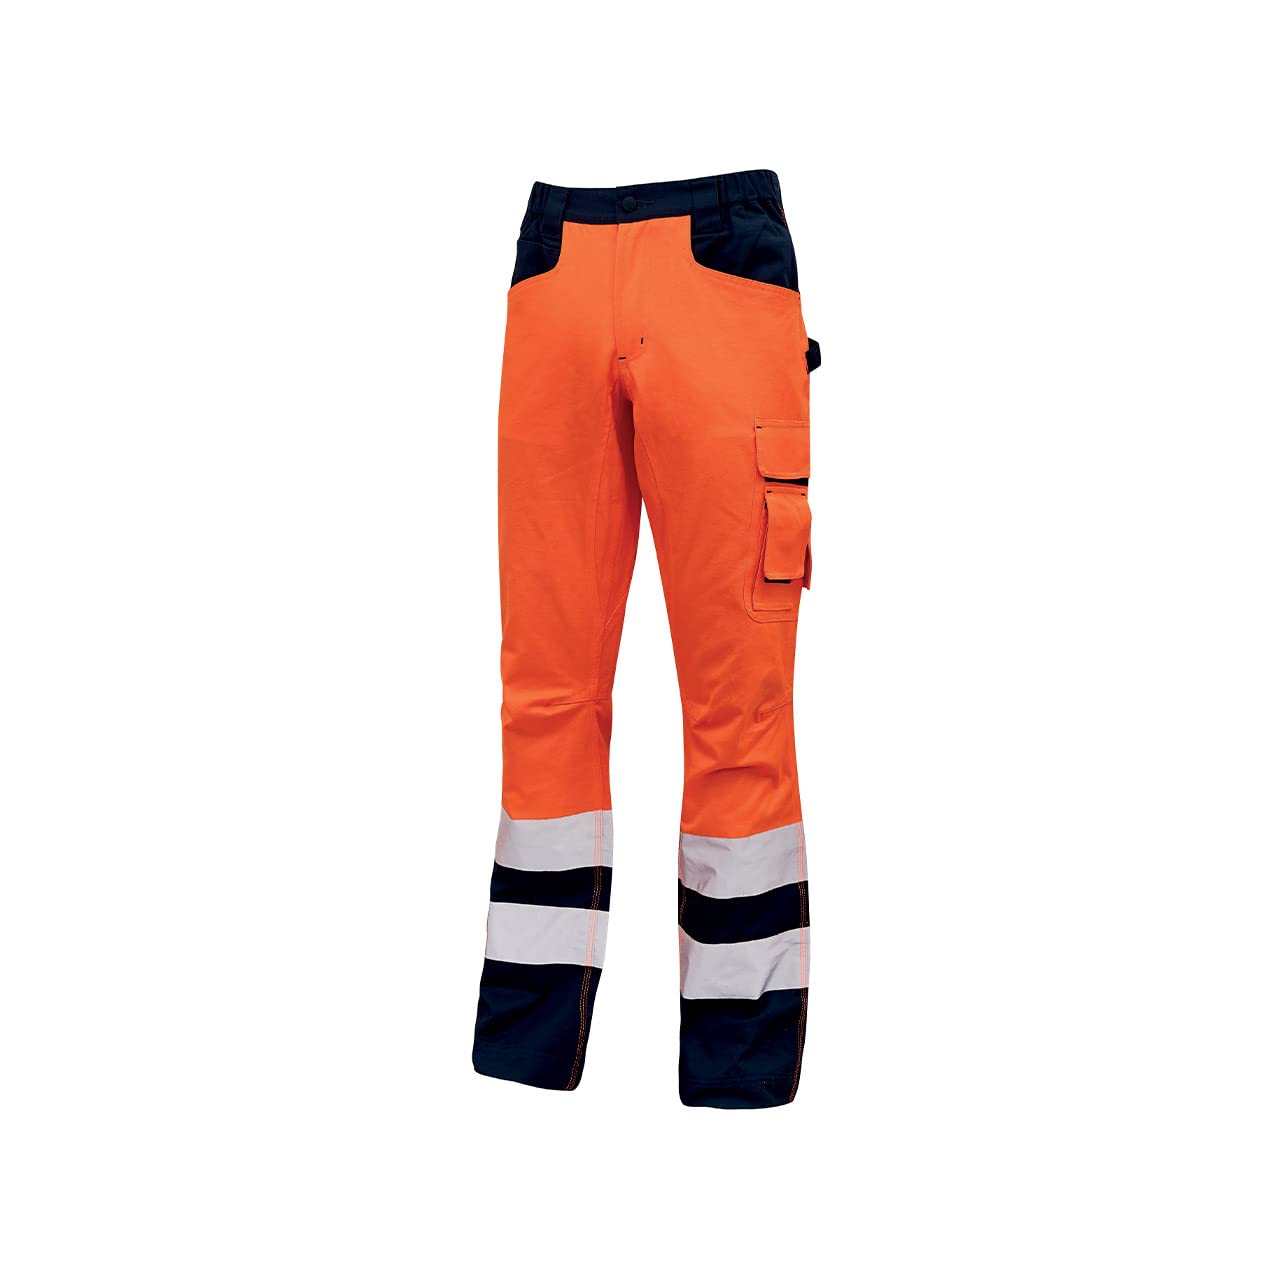 Pantalone alta visibilita light arancione fluo tg.xl